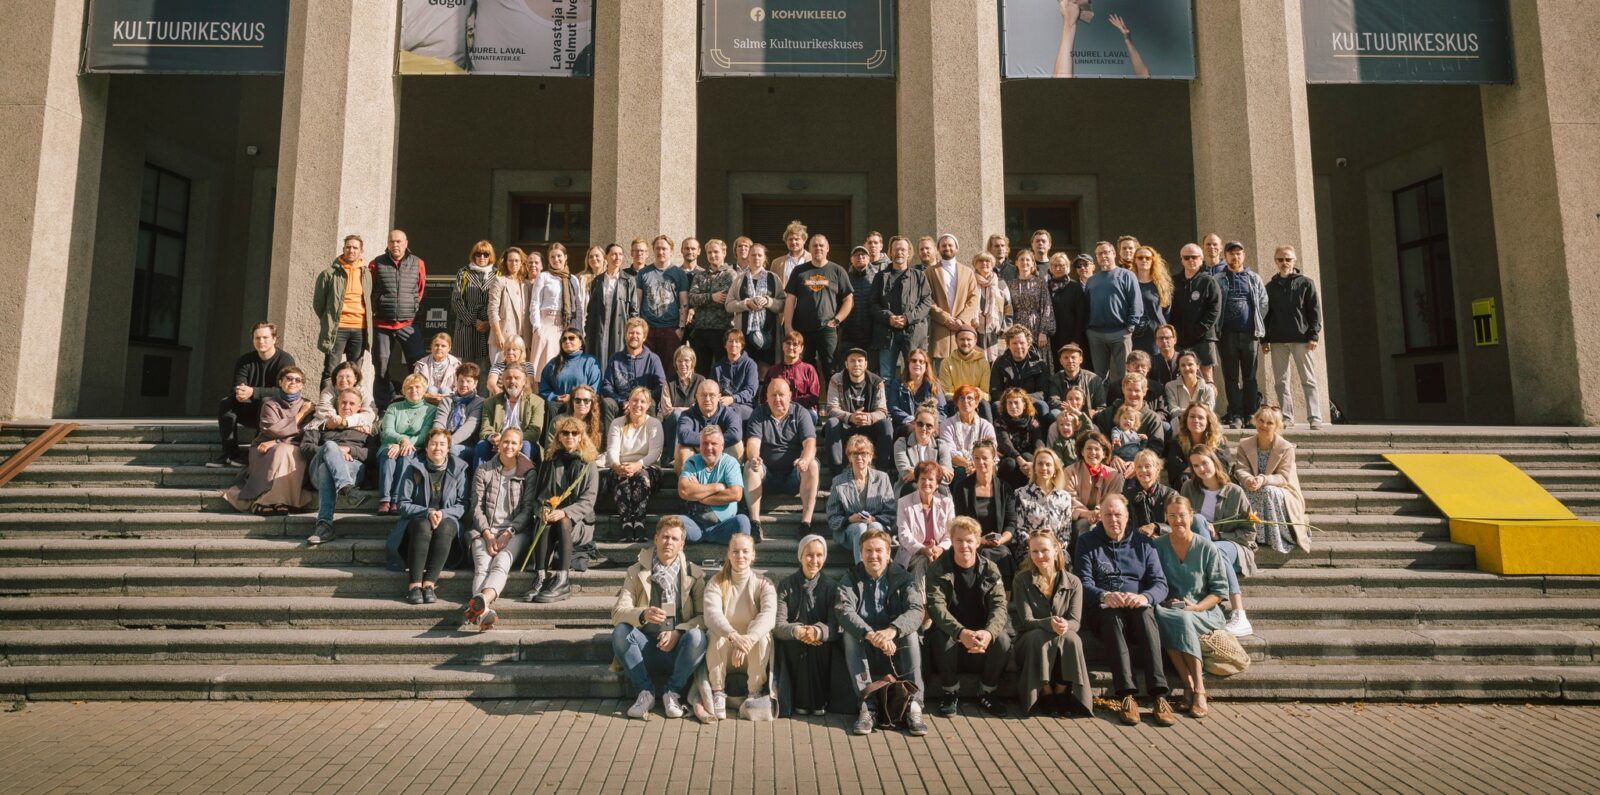 Pildil on sajakonnast inimesest koosnev Tallinna Linnateatri kollektiiv, kes istub Salme Kultuurikeskuse ees suurel trepil.